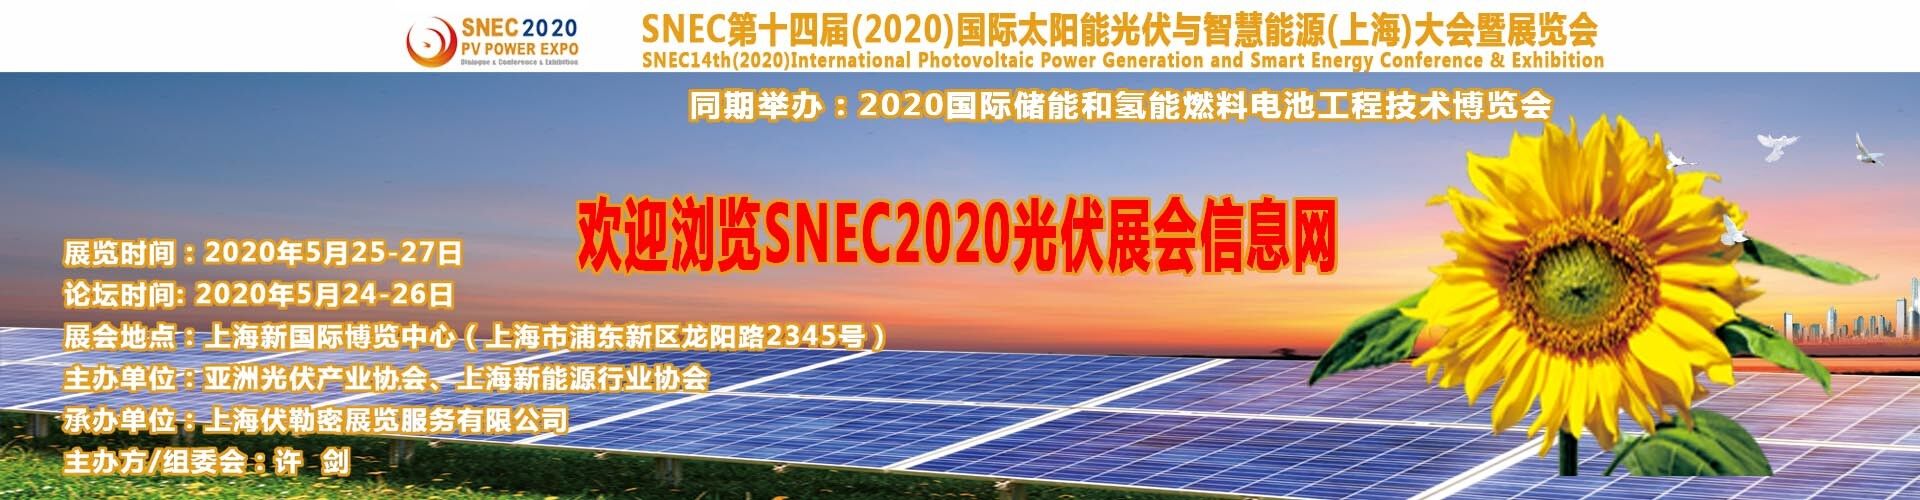 太陽能展會|上海SNEC*博覽會